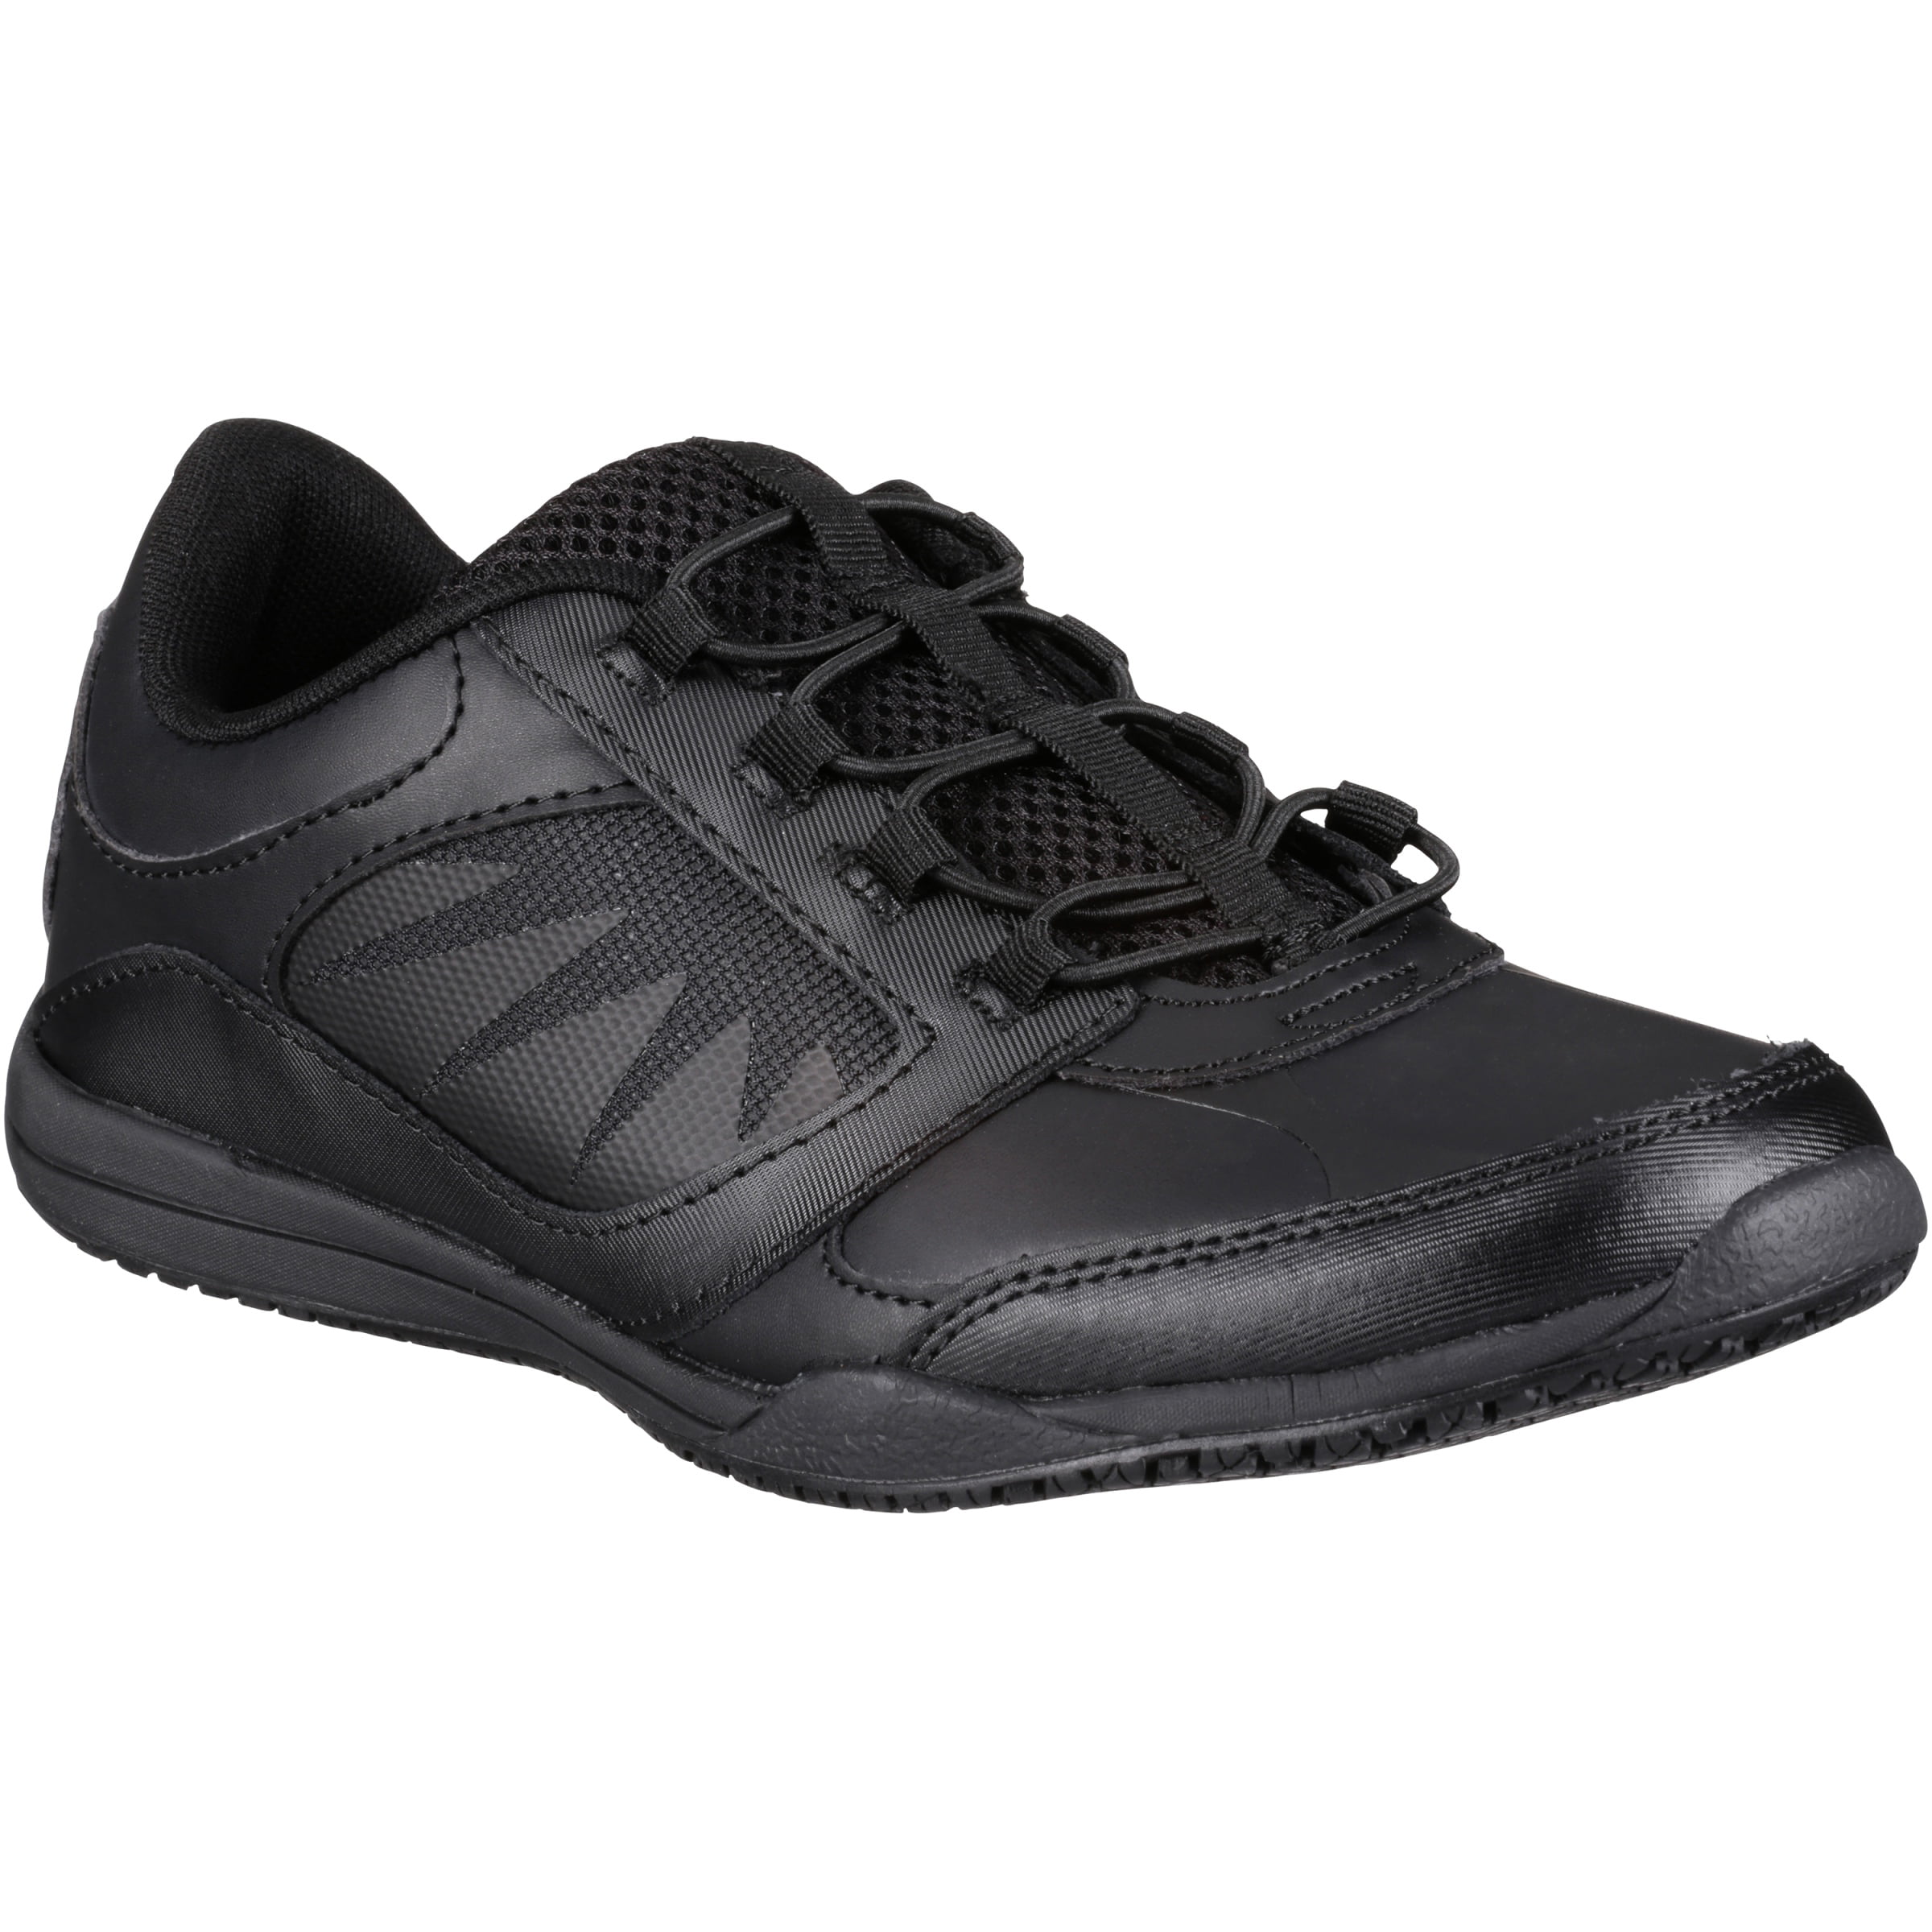 Tredsafe Women's Merlot Slip Resistant Athletic Shoe Black